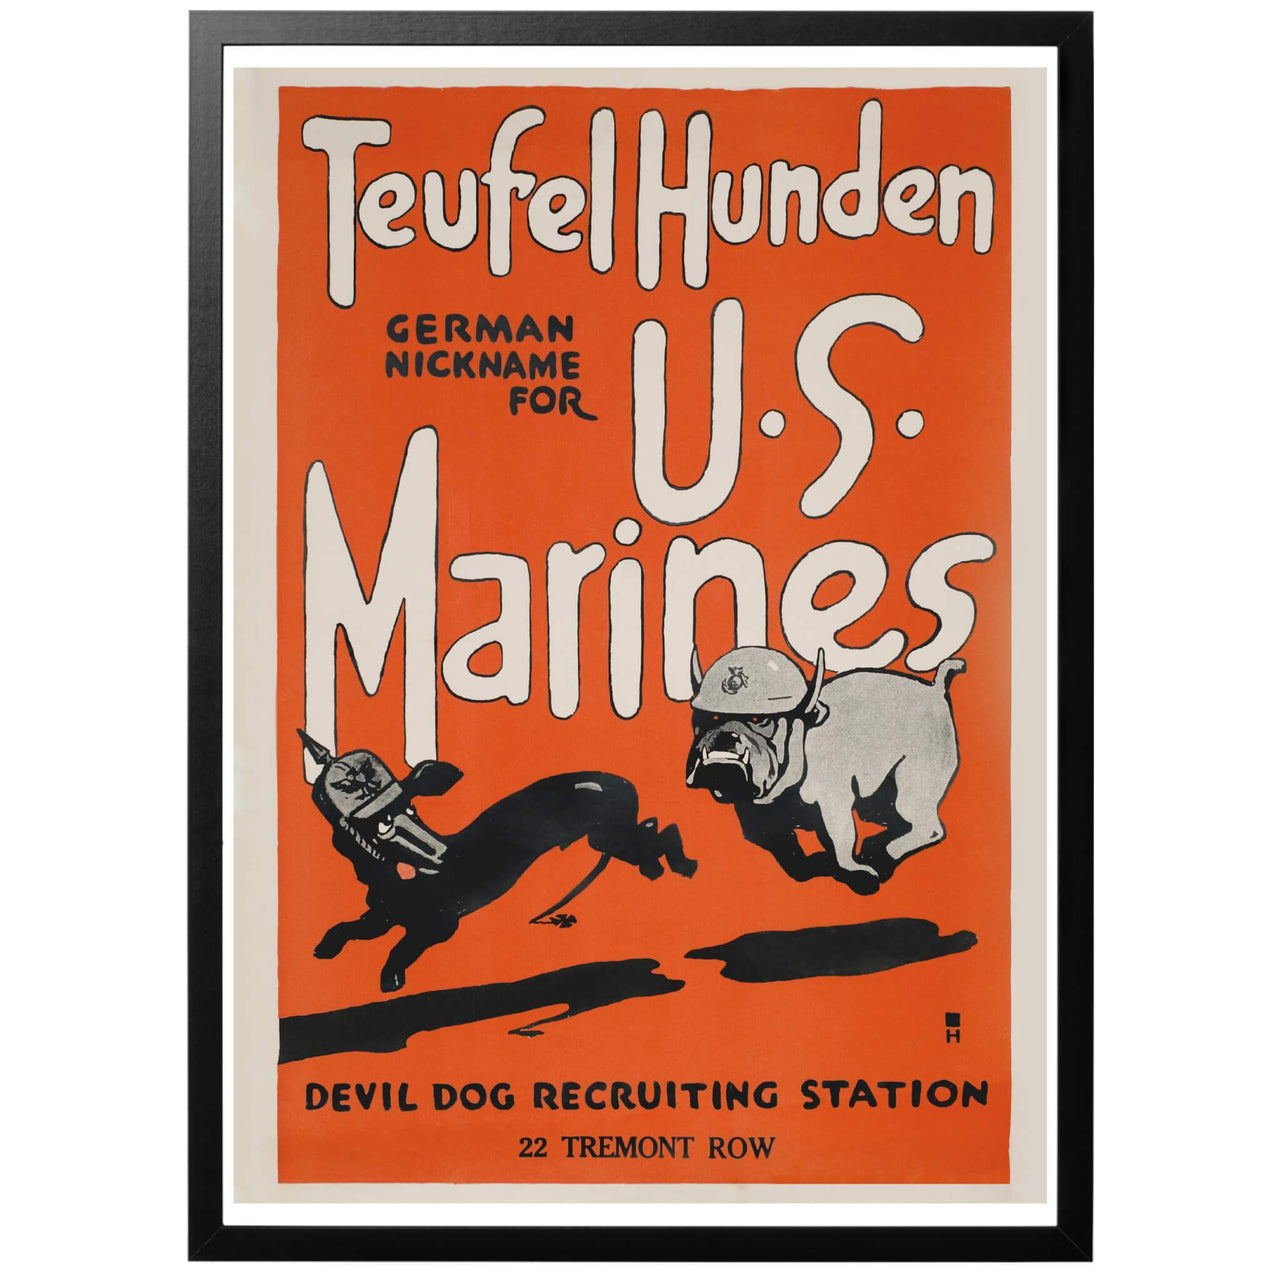 Teufel Hunden - German nickname for US Marines - Amerikansk första världskrigsaffisch där Marinkårens fruktade rykte hos tyskarna på ett komiskt sätt illustreras. En intressant aspekt på postern är felstavningen på "Teufel Hunden" (Djävulshundarna) - ordet skrivs egentligen "Teufelhunde". 